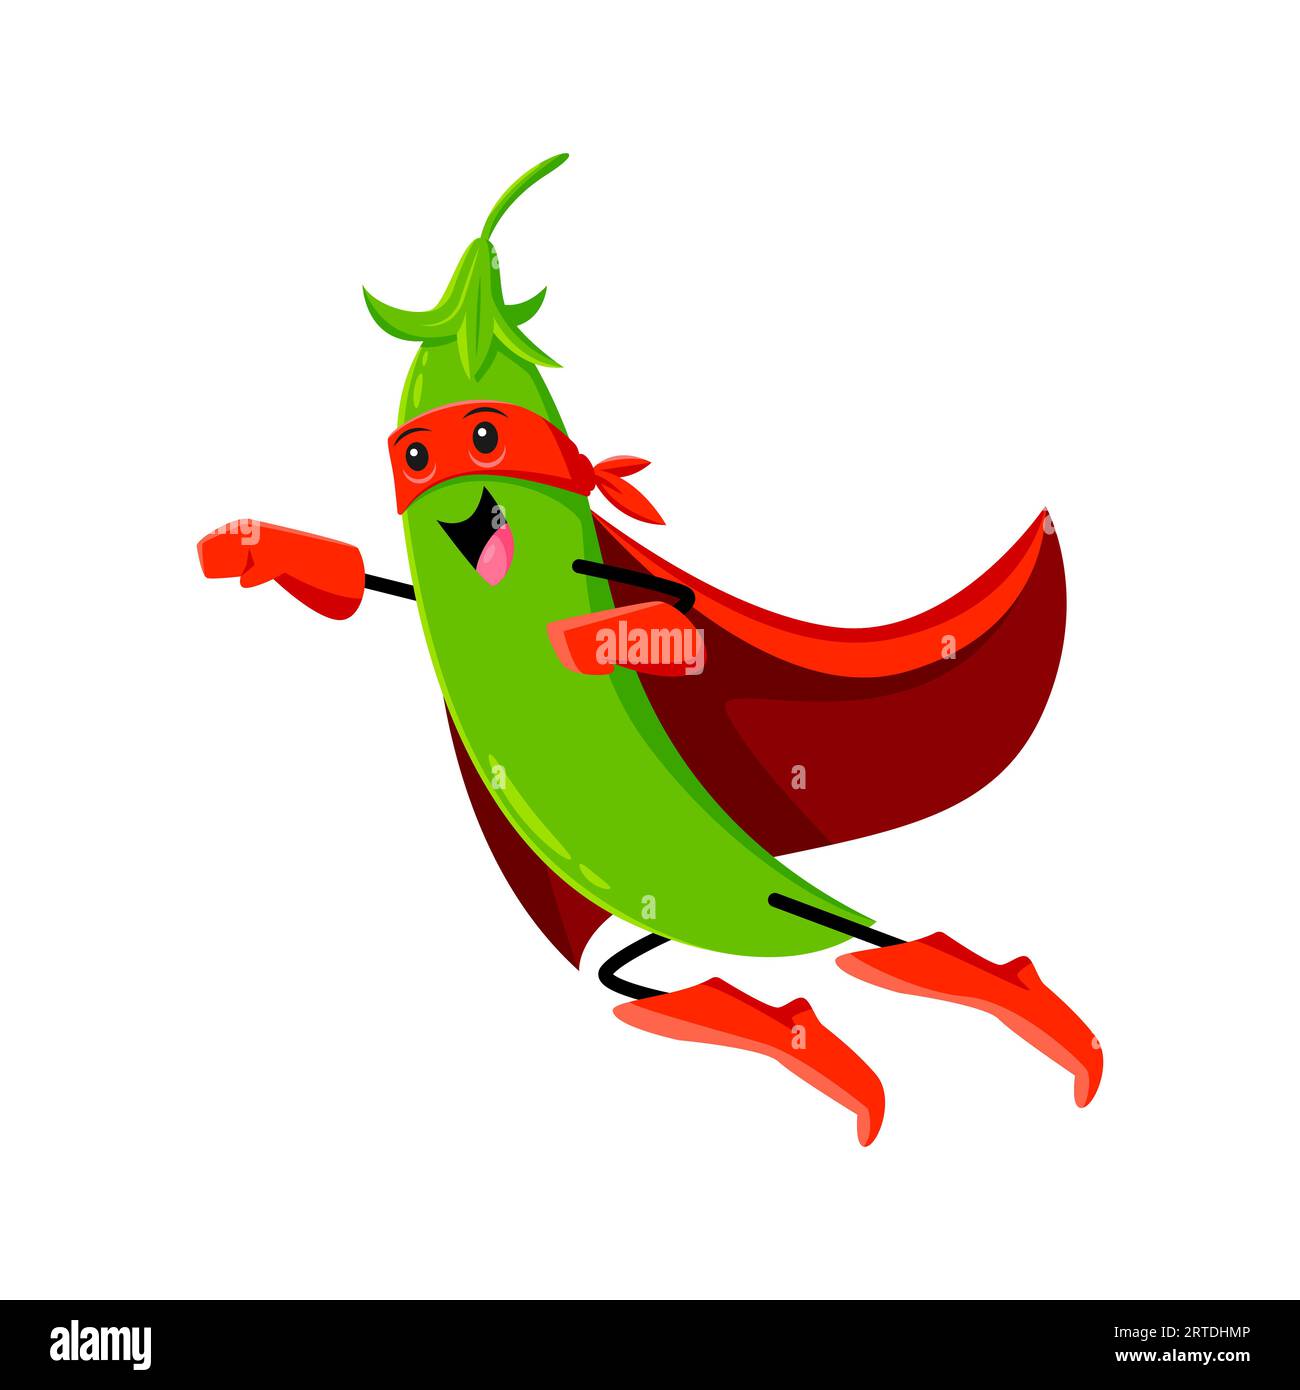 Il legume dei cartoni animati o il supereroe del pisello verde, che vola con un'espressione determinata sul volto, indossa un mantello rosso e combatte il male con una forza sovrumana, alimentata da una dieta a base di fagioli e noci nutrienti Illustrazione Vettoriale